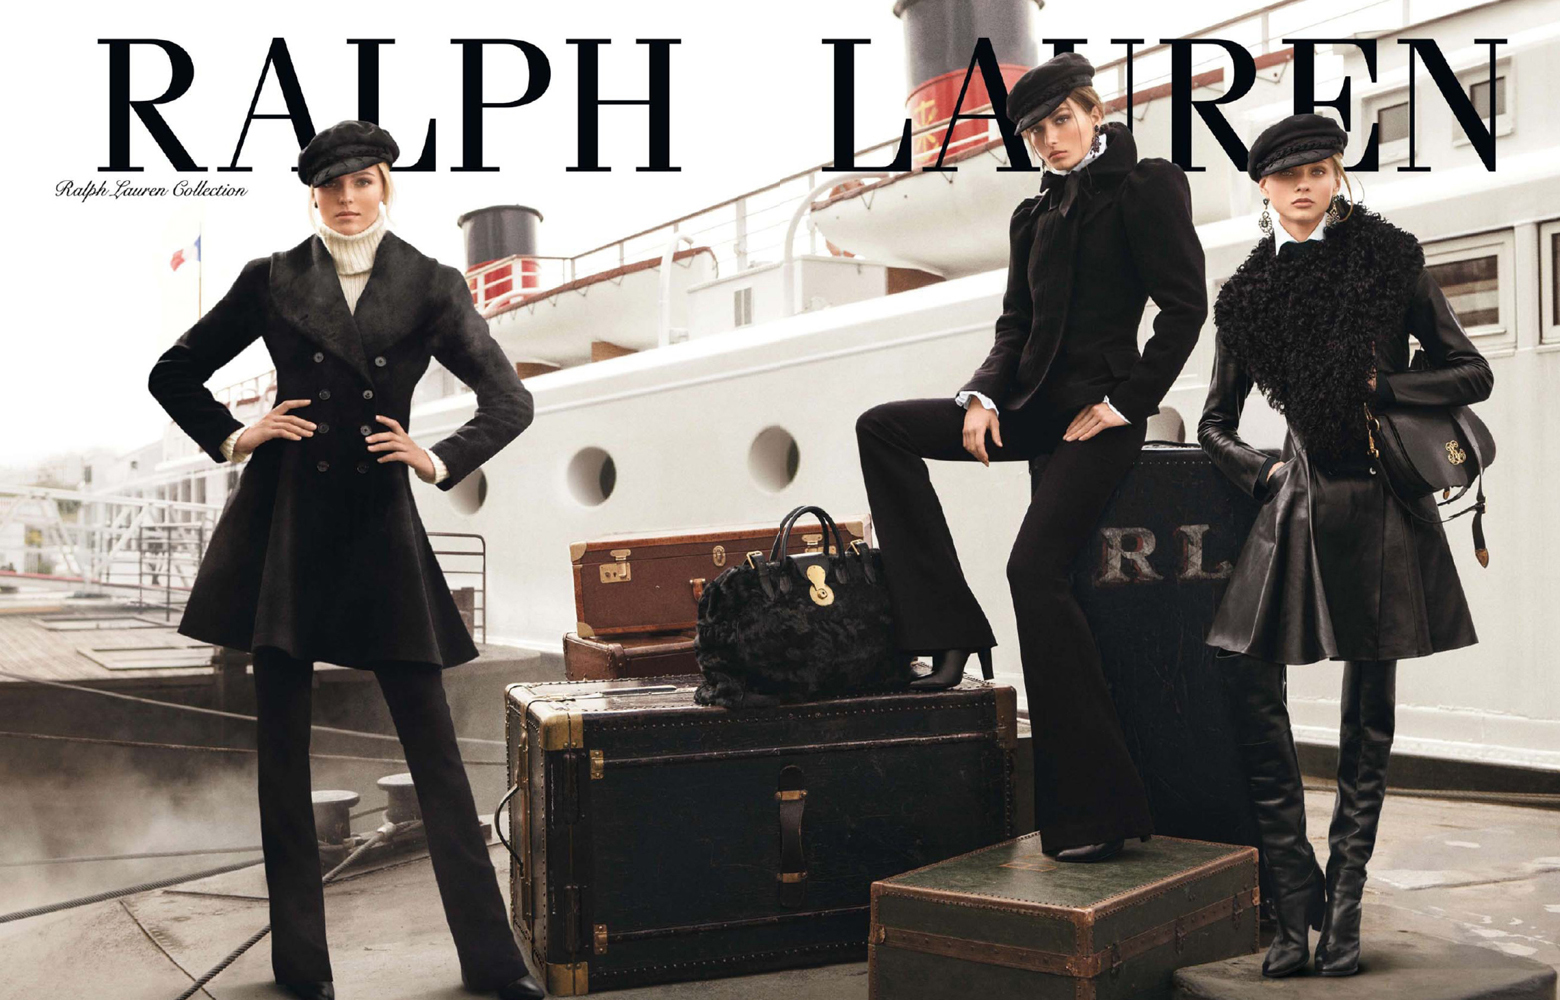 Ralph Lauren Collection FW 2013